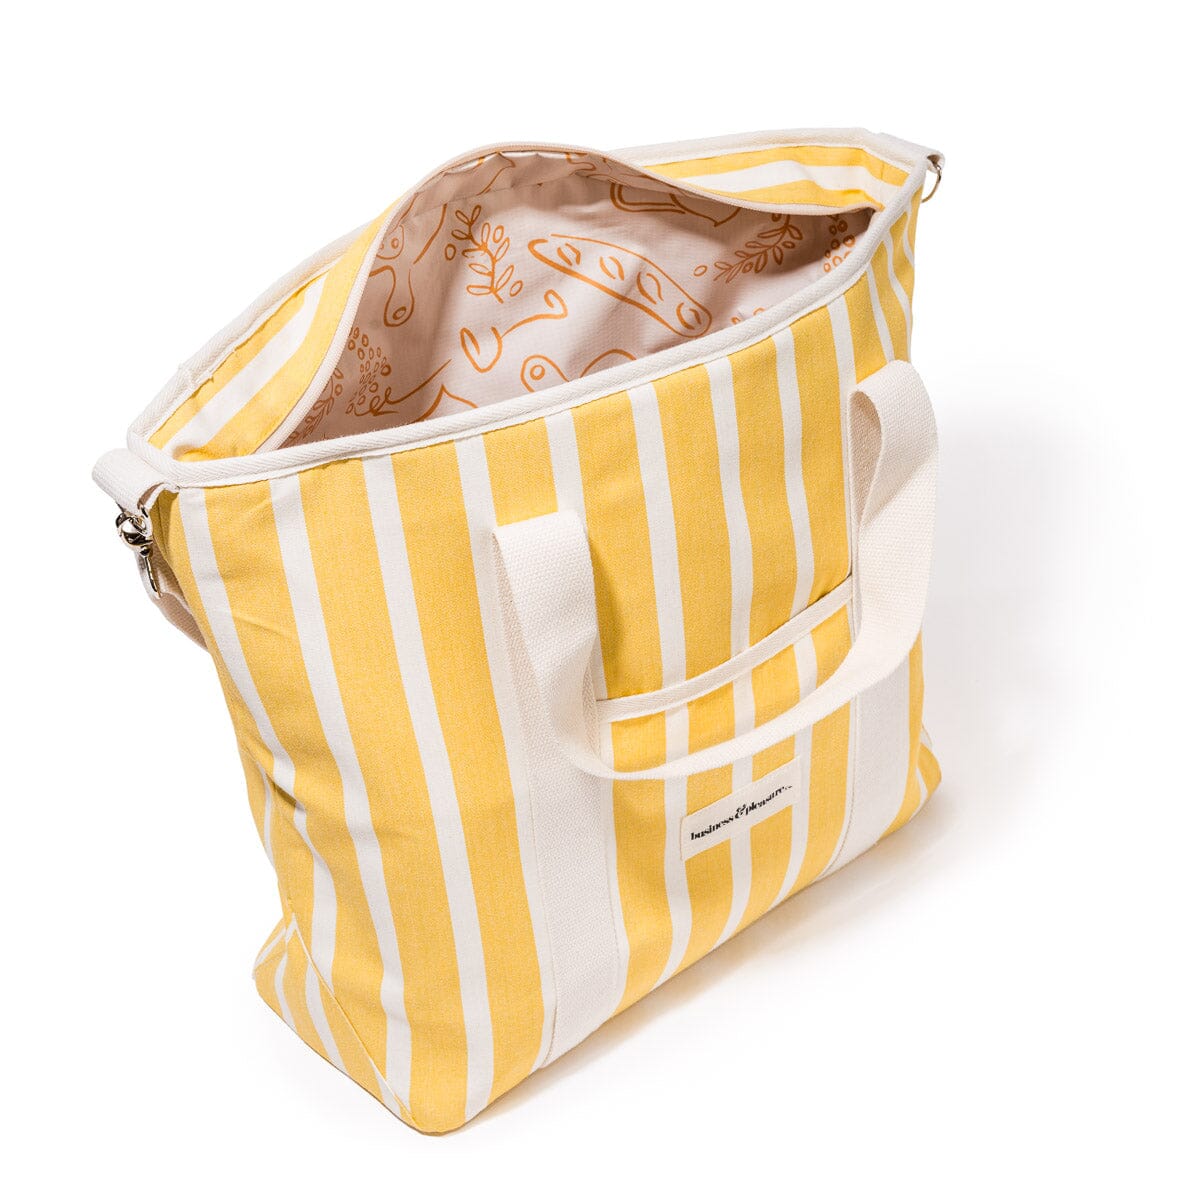 The Cooler Tote Bag - Monaco Mimosa Stripe Cooler Tote Business & Pleasure Co 